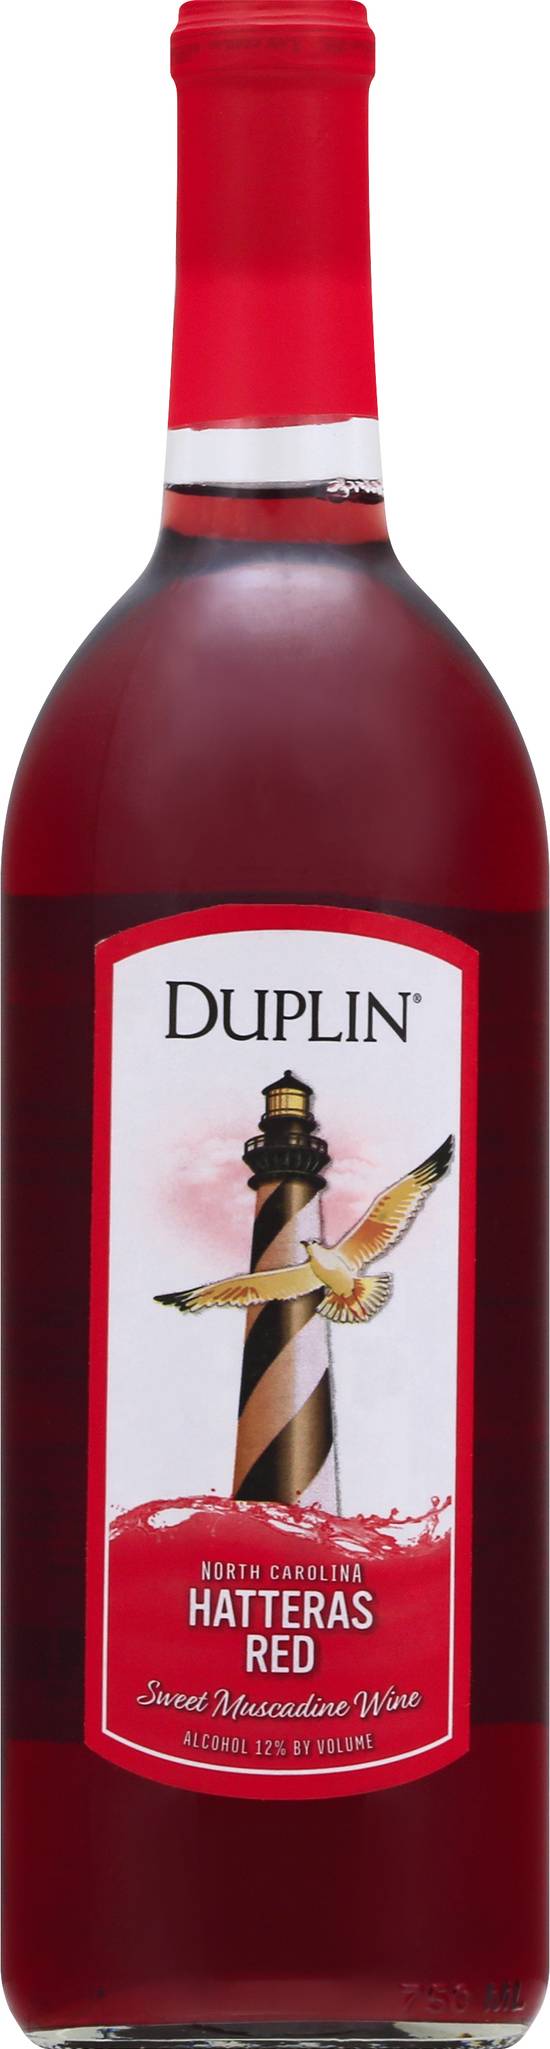 Duplin Hatteras Red Muscadine Wine (750 ml)